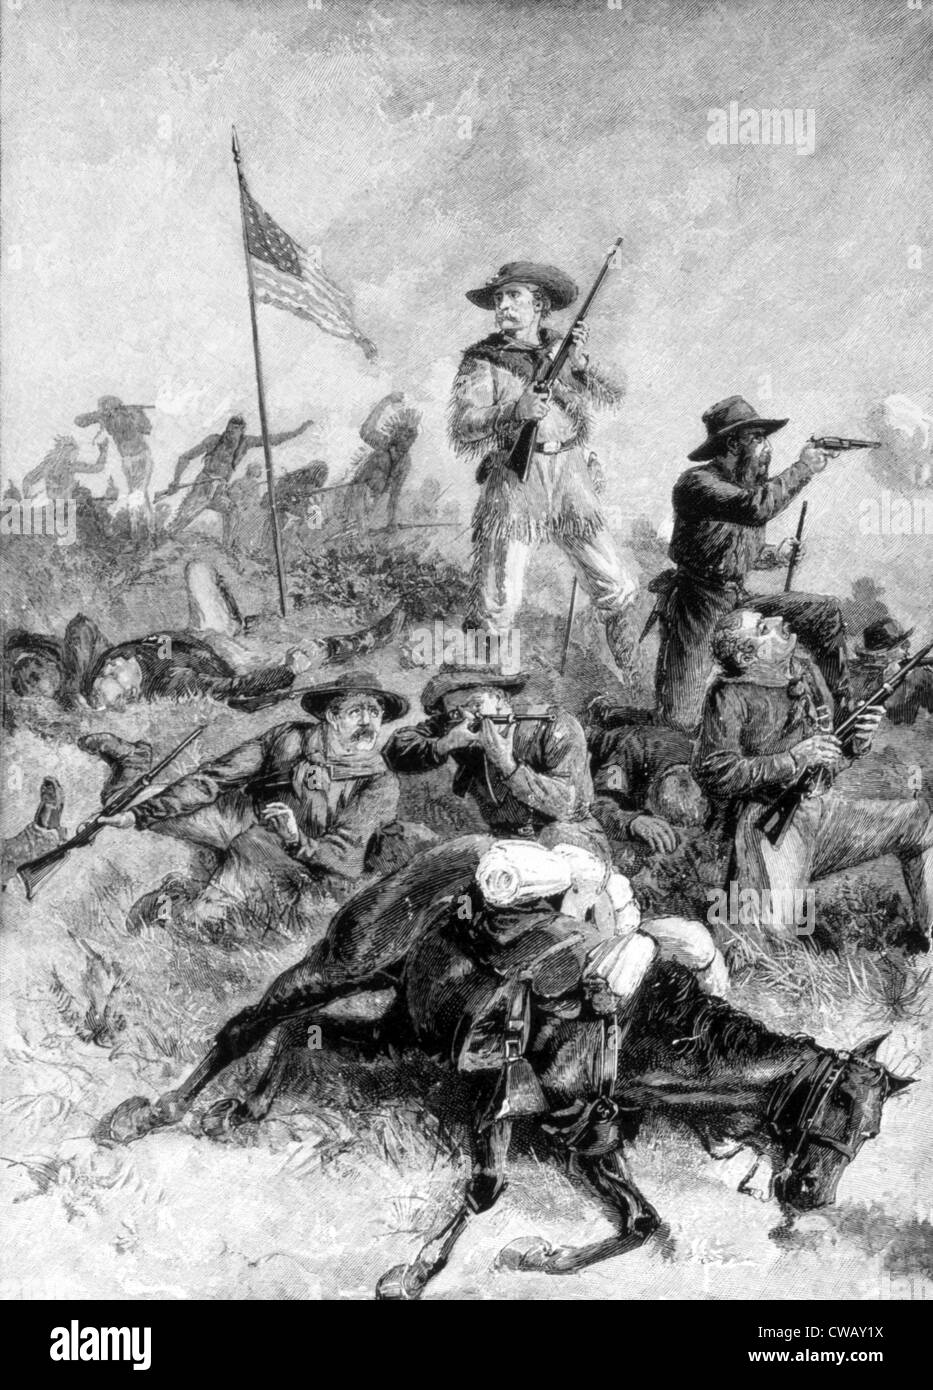 Custer's Last Stand, General George Armstrong Custer in der Schlacht von Little Bighorn 1876 Stockfoto